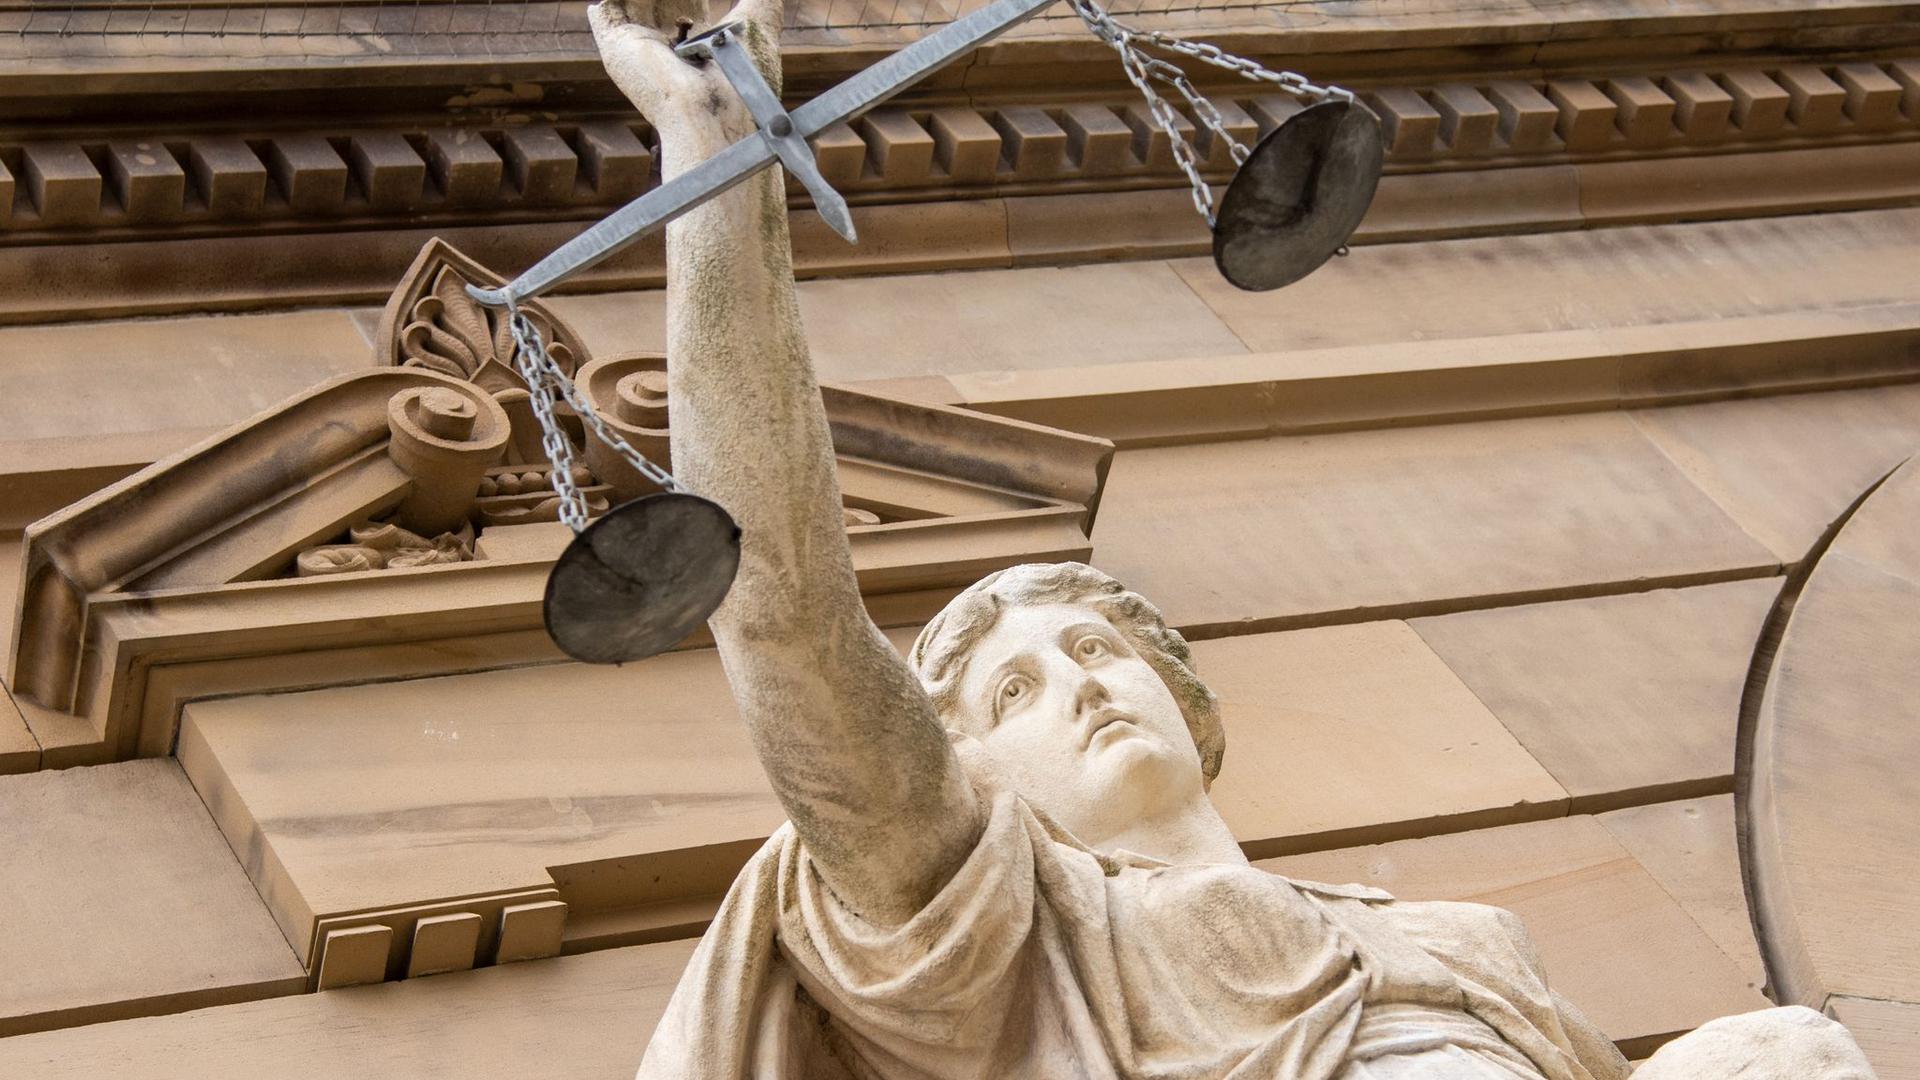 Vor einem Gericht hält eine Statue der Justitia eine Waagschale.